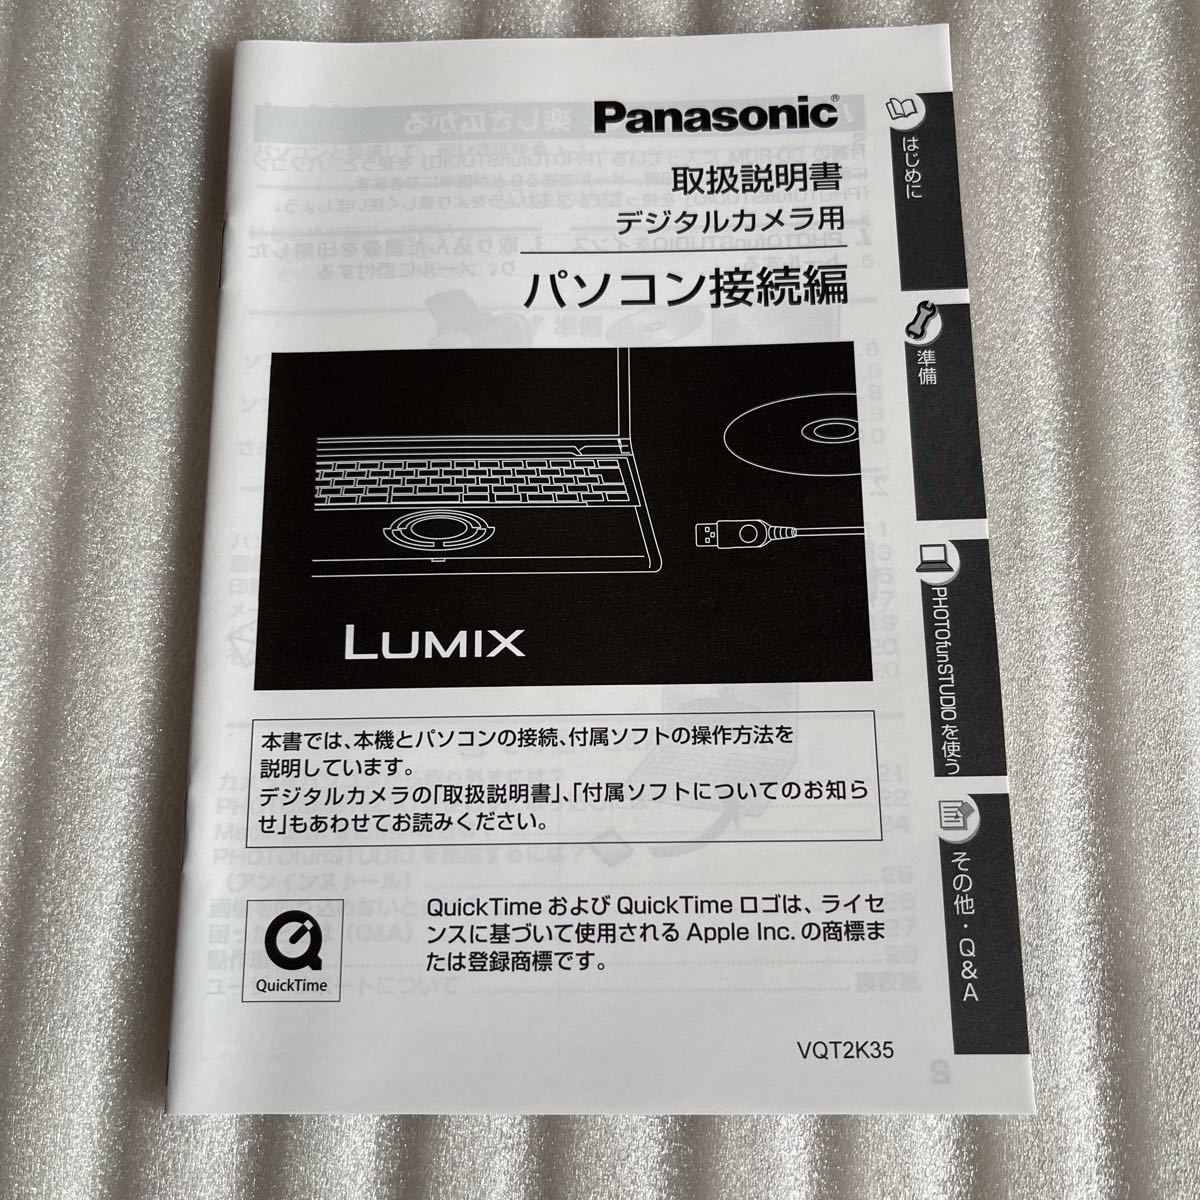 即決 Panasonic パナソニック デジカメ パソコン接続 取扱説明書 取説マニュアル デジタルカメラ LUMIXの画像1